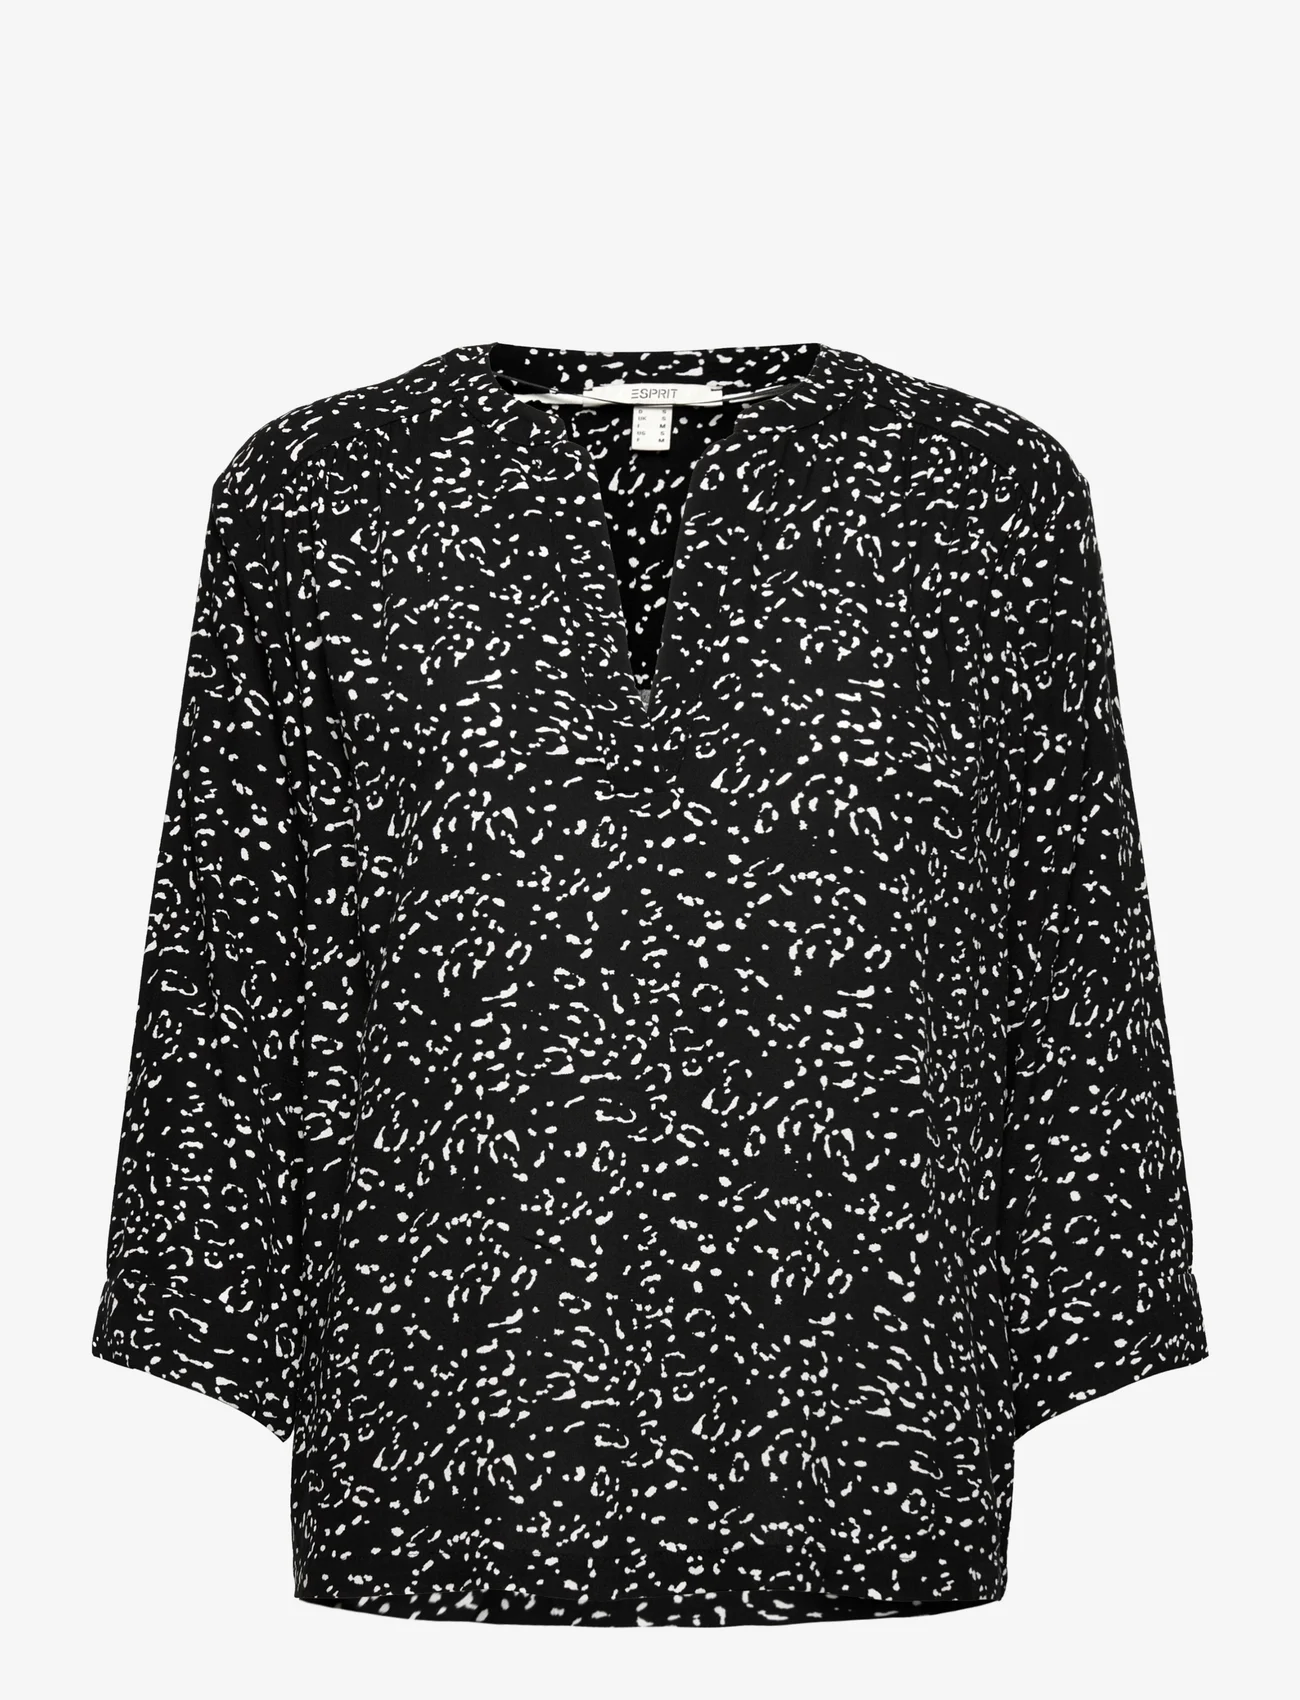 Esprit Casual - Print blouse with LENZING™ ECOVERO™ - langærmede bluser - black 4 - 0